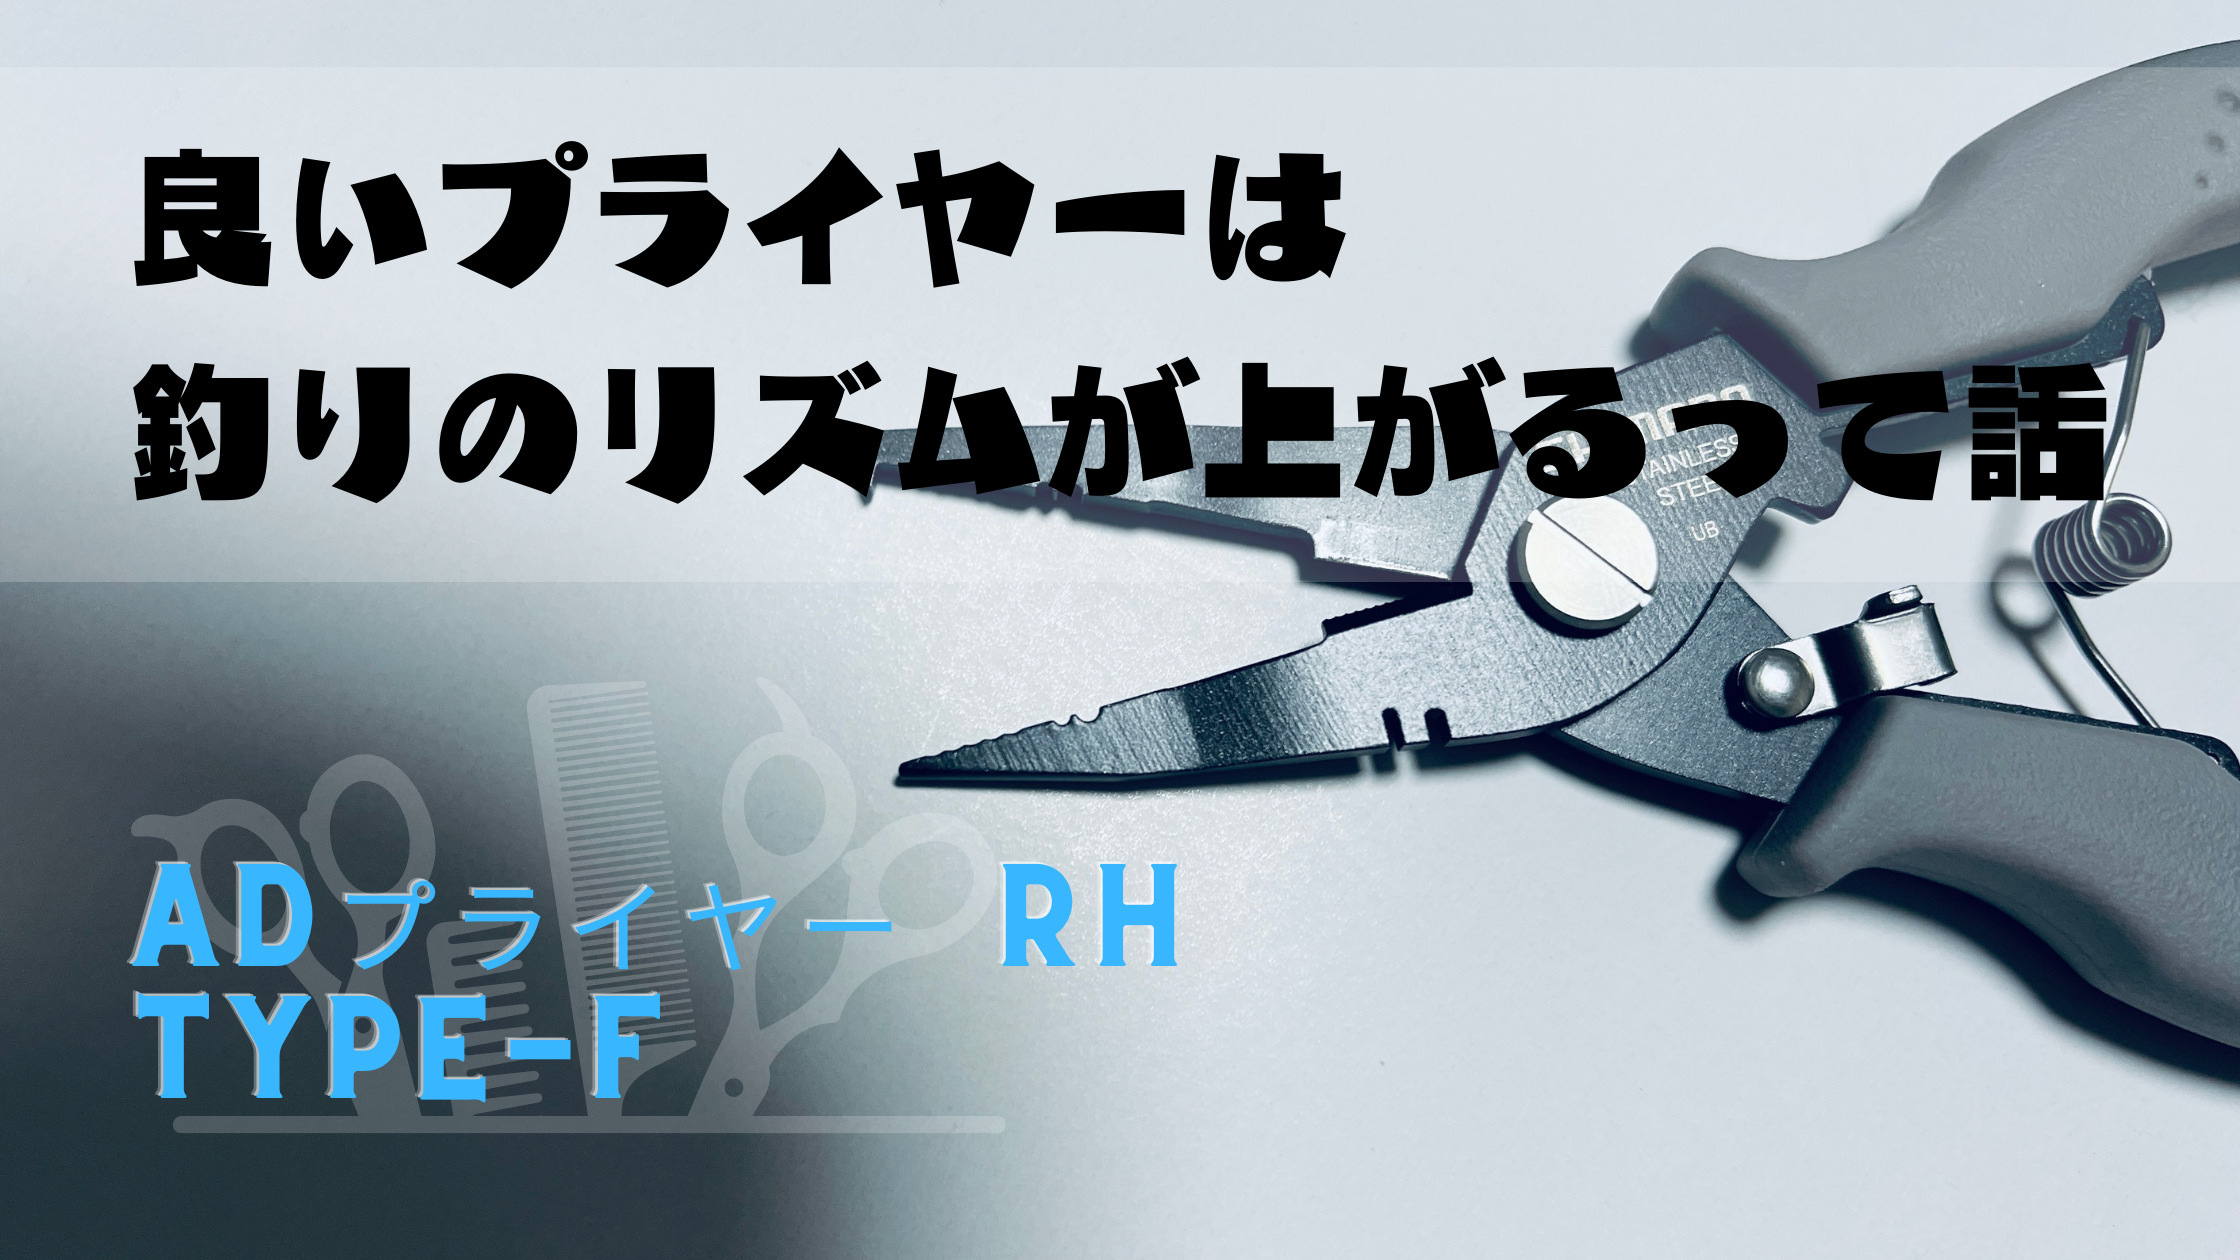 ADプライヤー RH TYPE-F